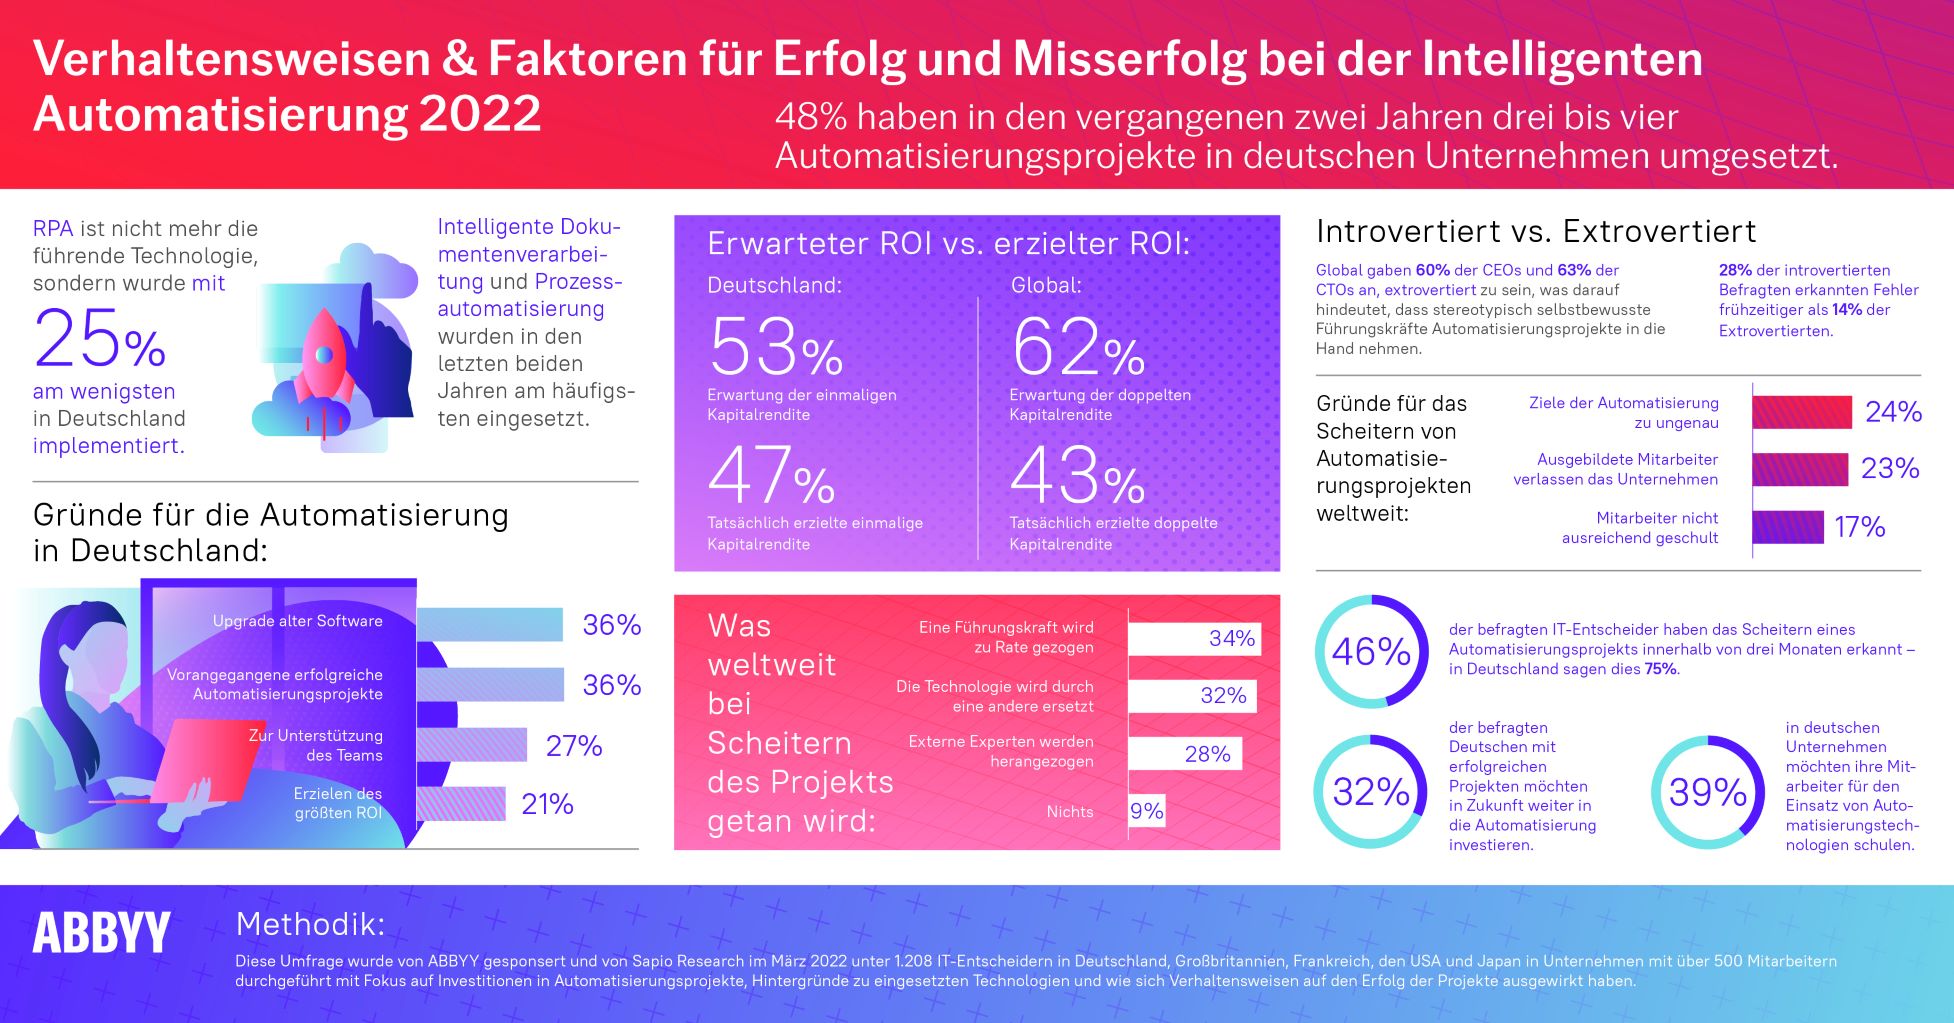 ABBYY Umfrage: 94% der deutschen Unternehmen erzielten Erfolge beim Einsatz von Automatisierungstechnologien